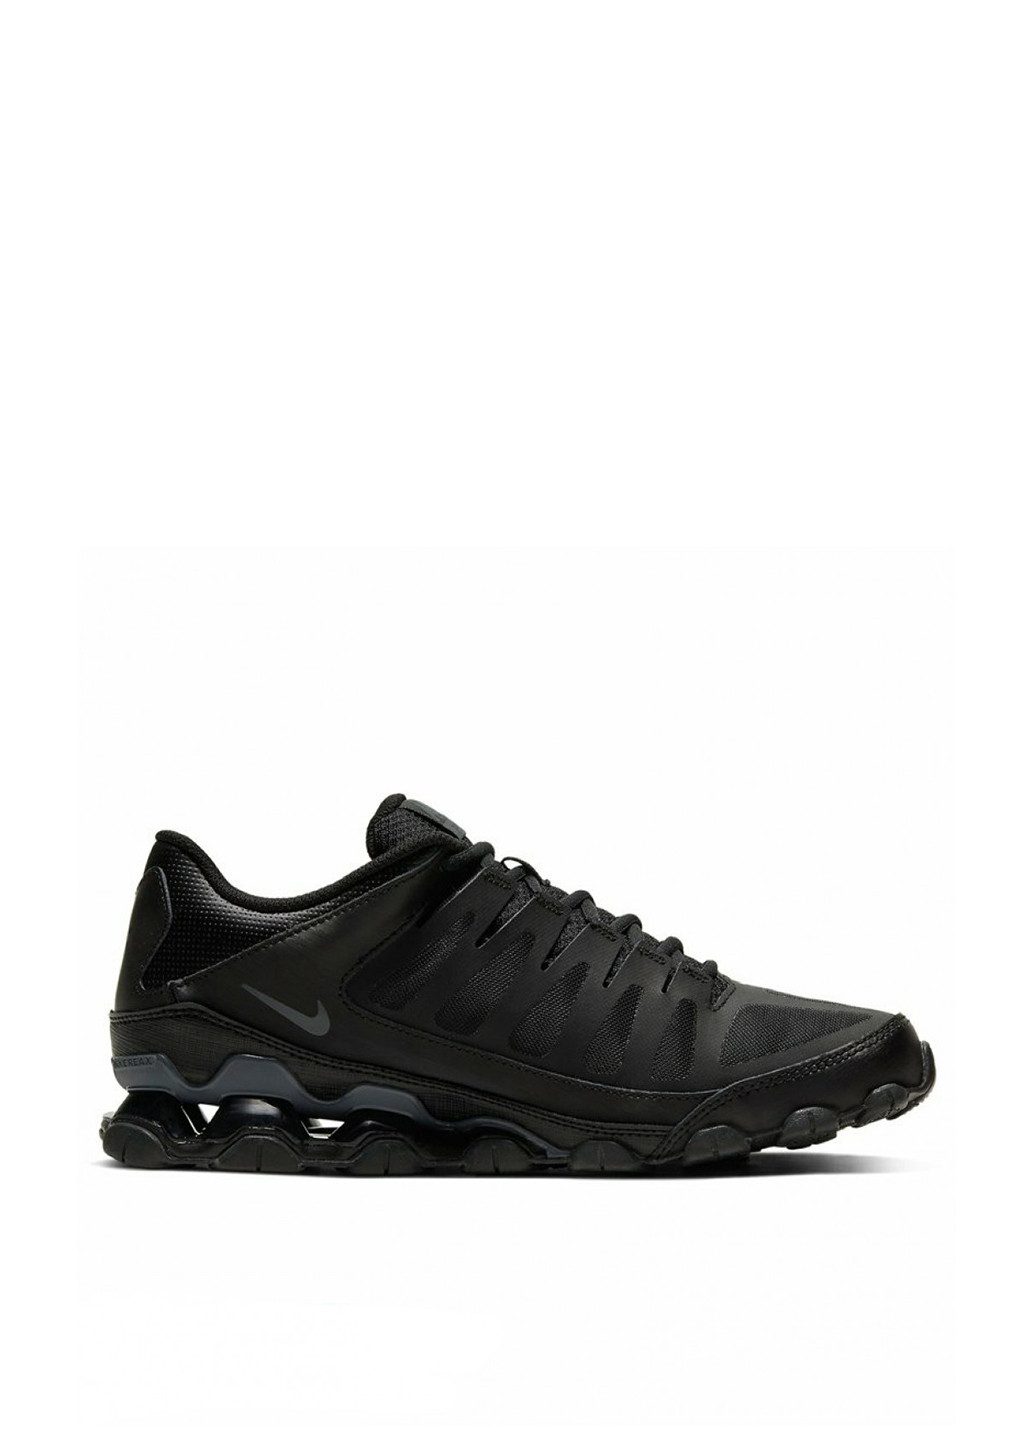 Черные демисезонные кроссовки Nike REAX 8 TR MESH